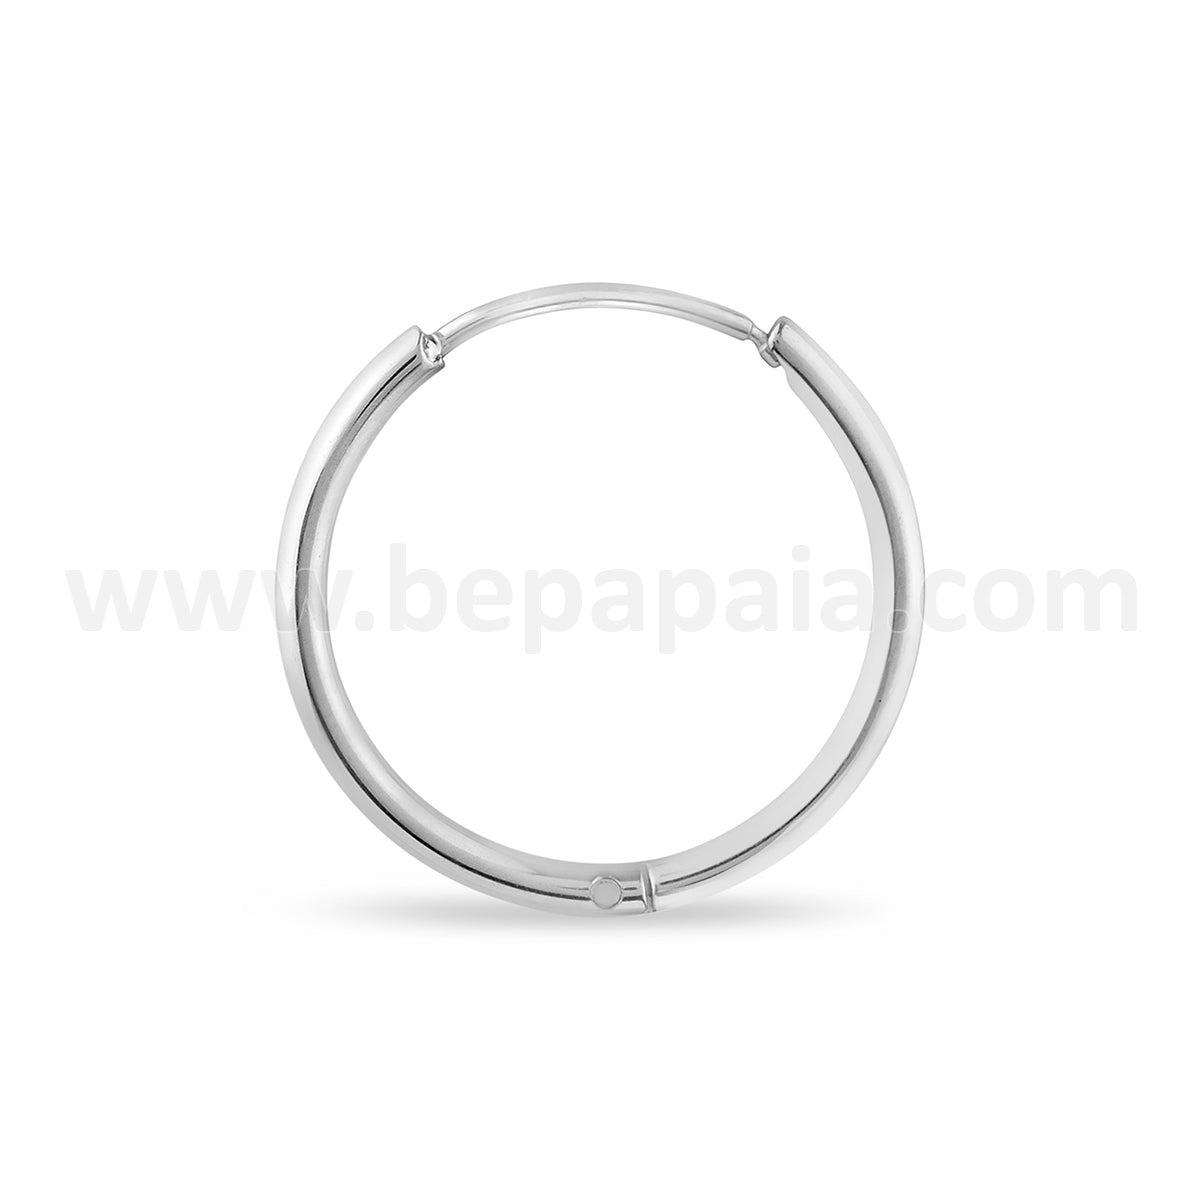 Stainless steel hoop earring 1.2mm